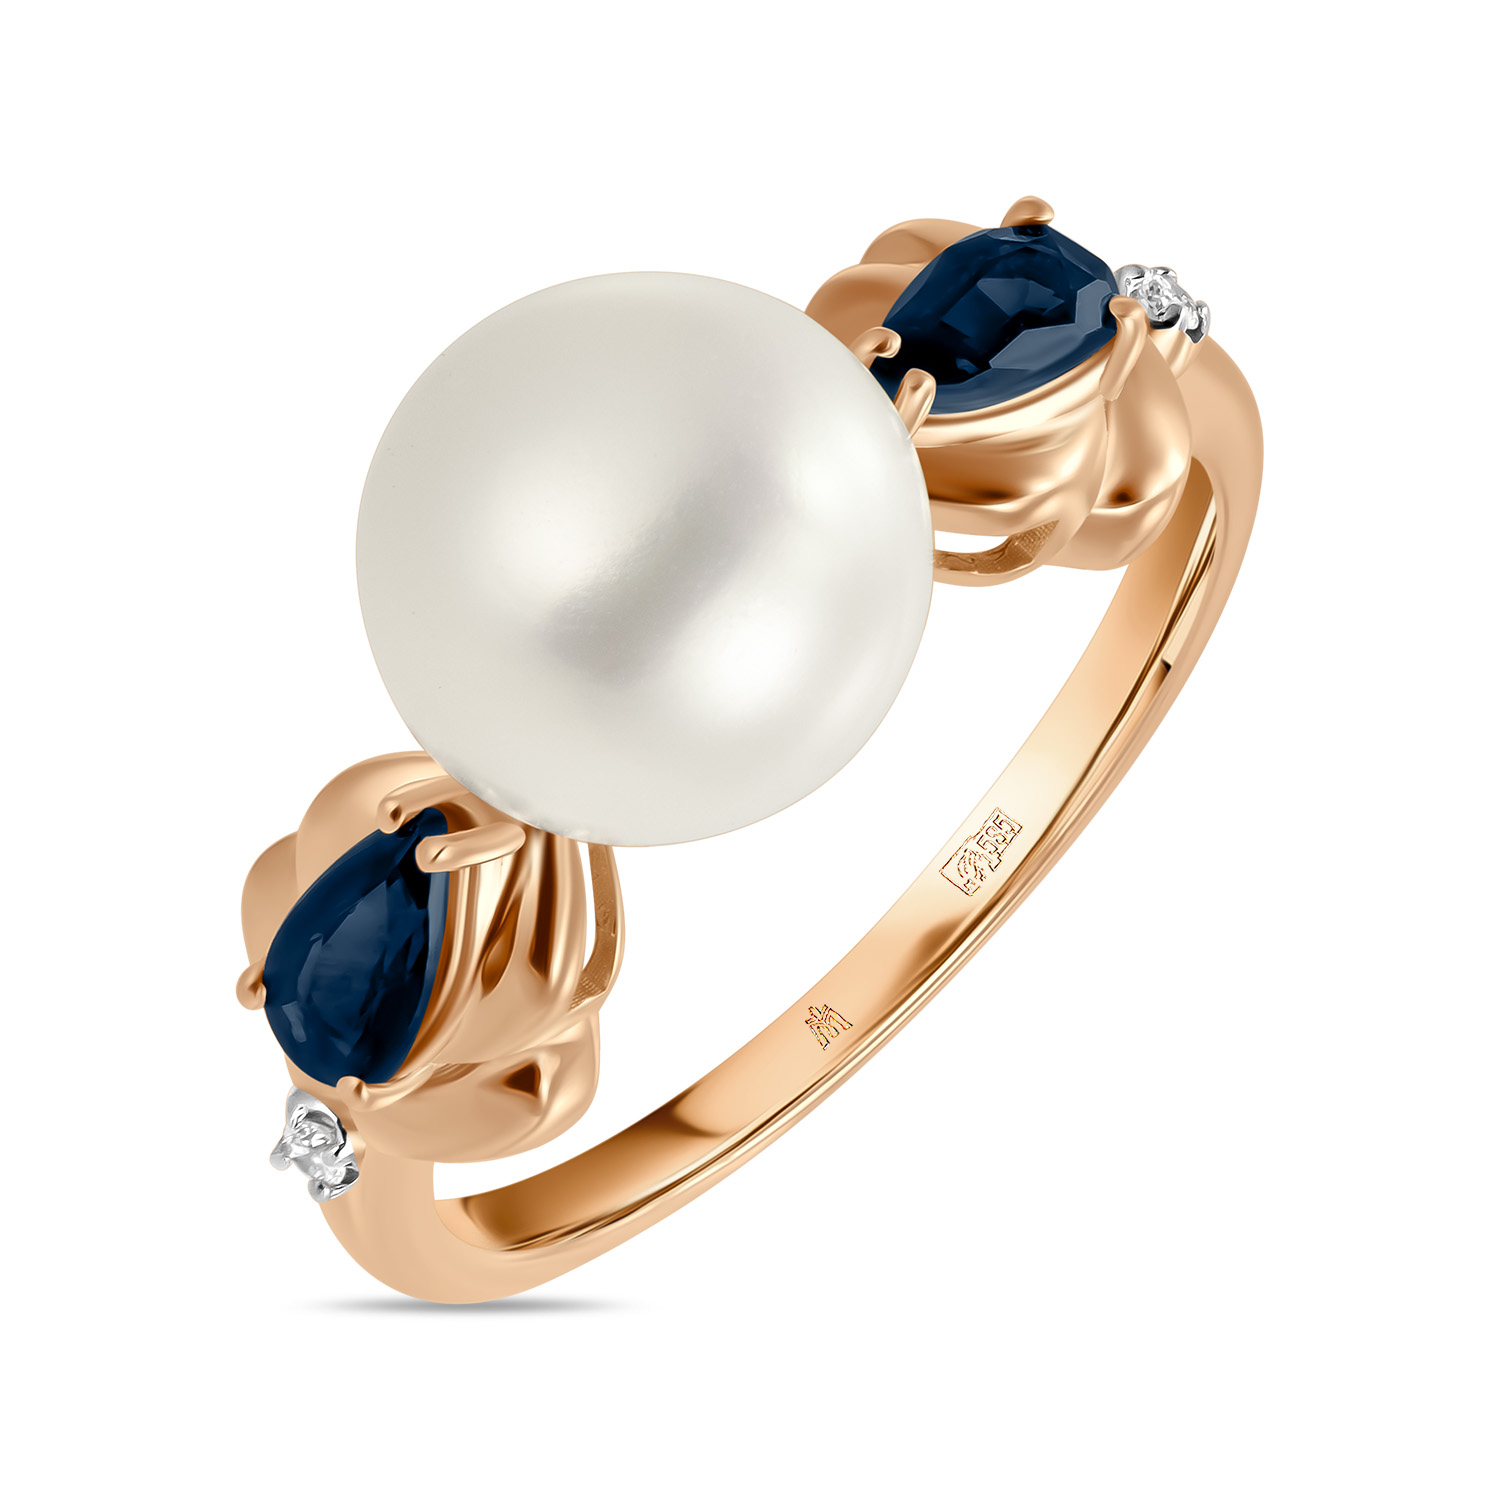 Кольца МЮЗ Золотое кольцо с бриллиантами, жемчугом и сапфирами кольца мюз золотое кольцо с аметистом жемчугом и сапфирами